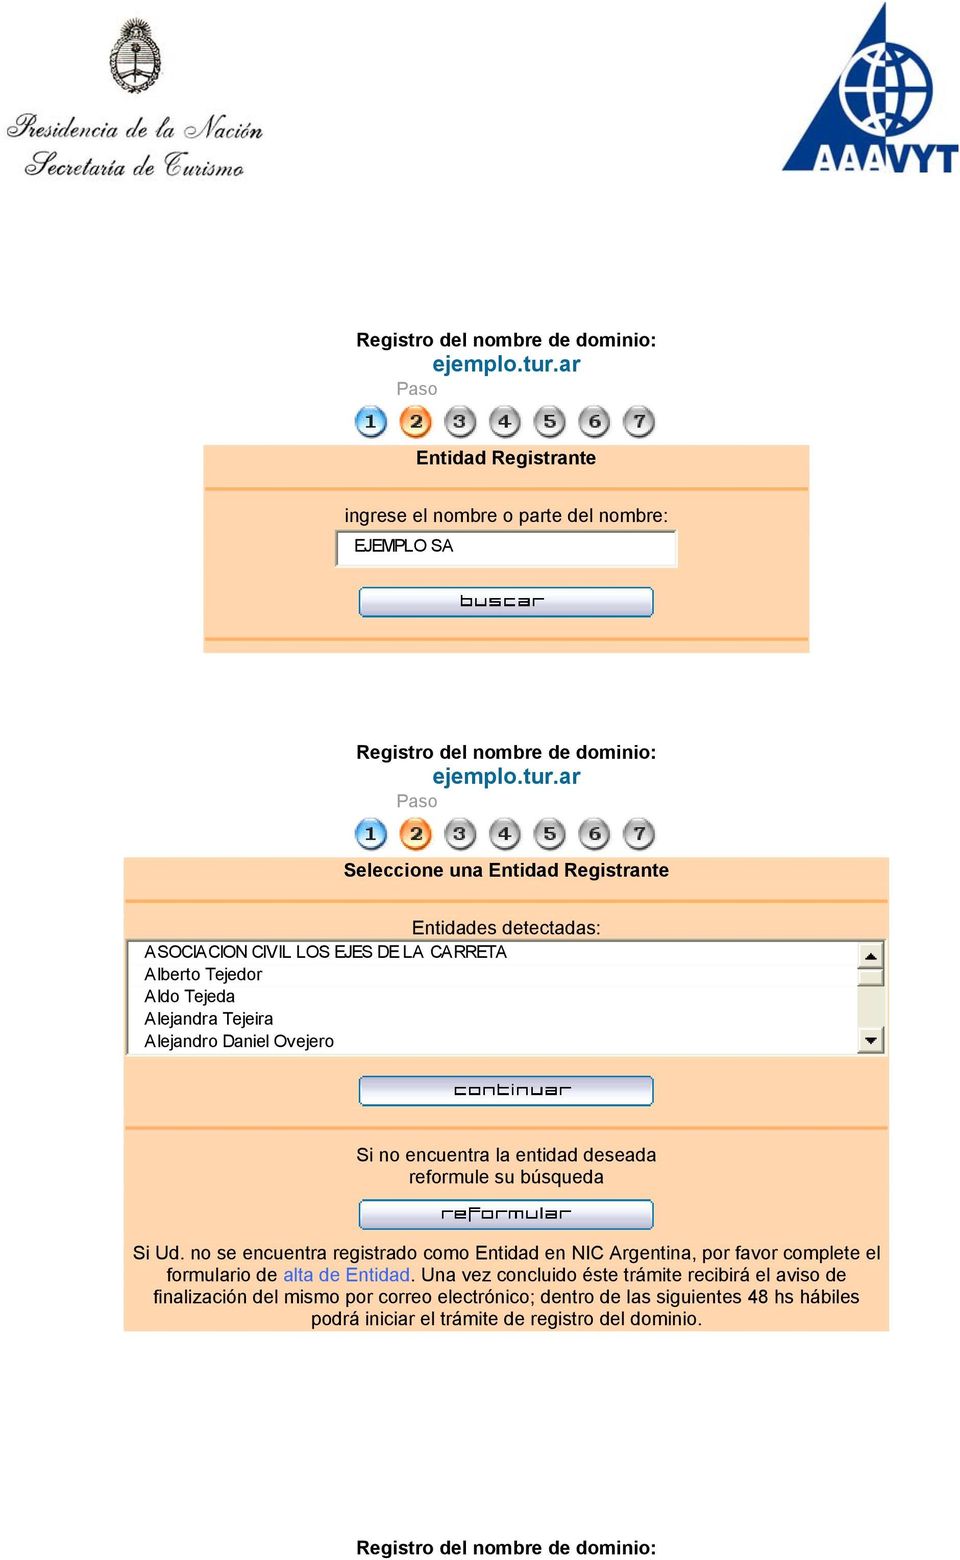 búsqueda Si Ud. no se encuentra registrado como Entidad en NIC Argentina, por favor complete el formulario de Halta de EntidadH.